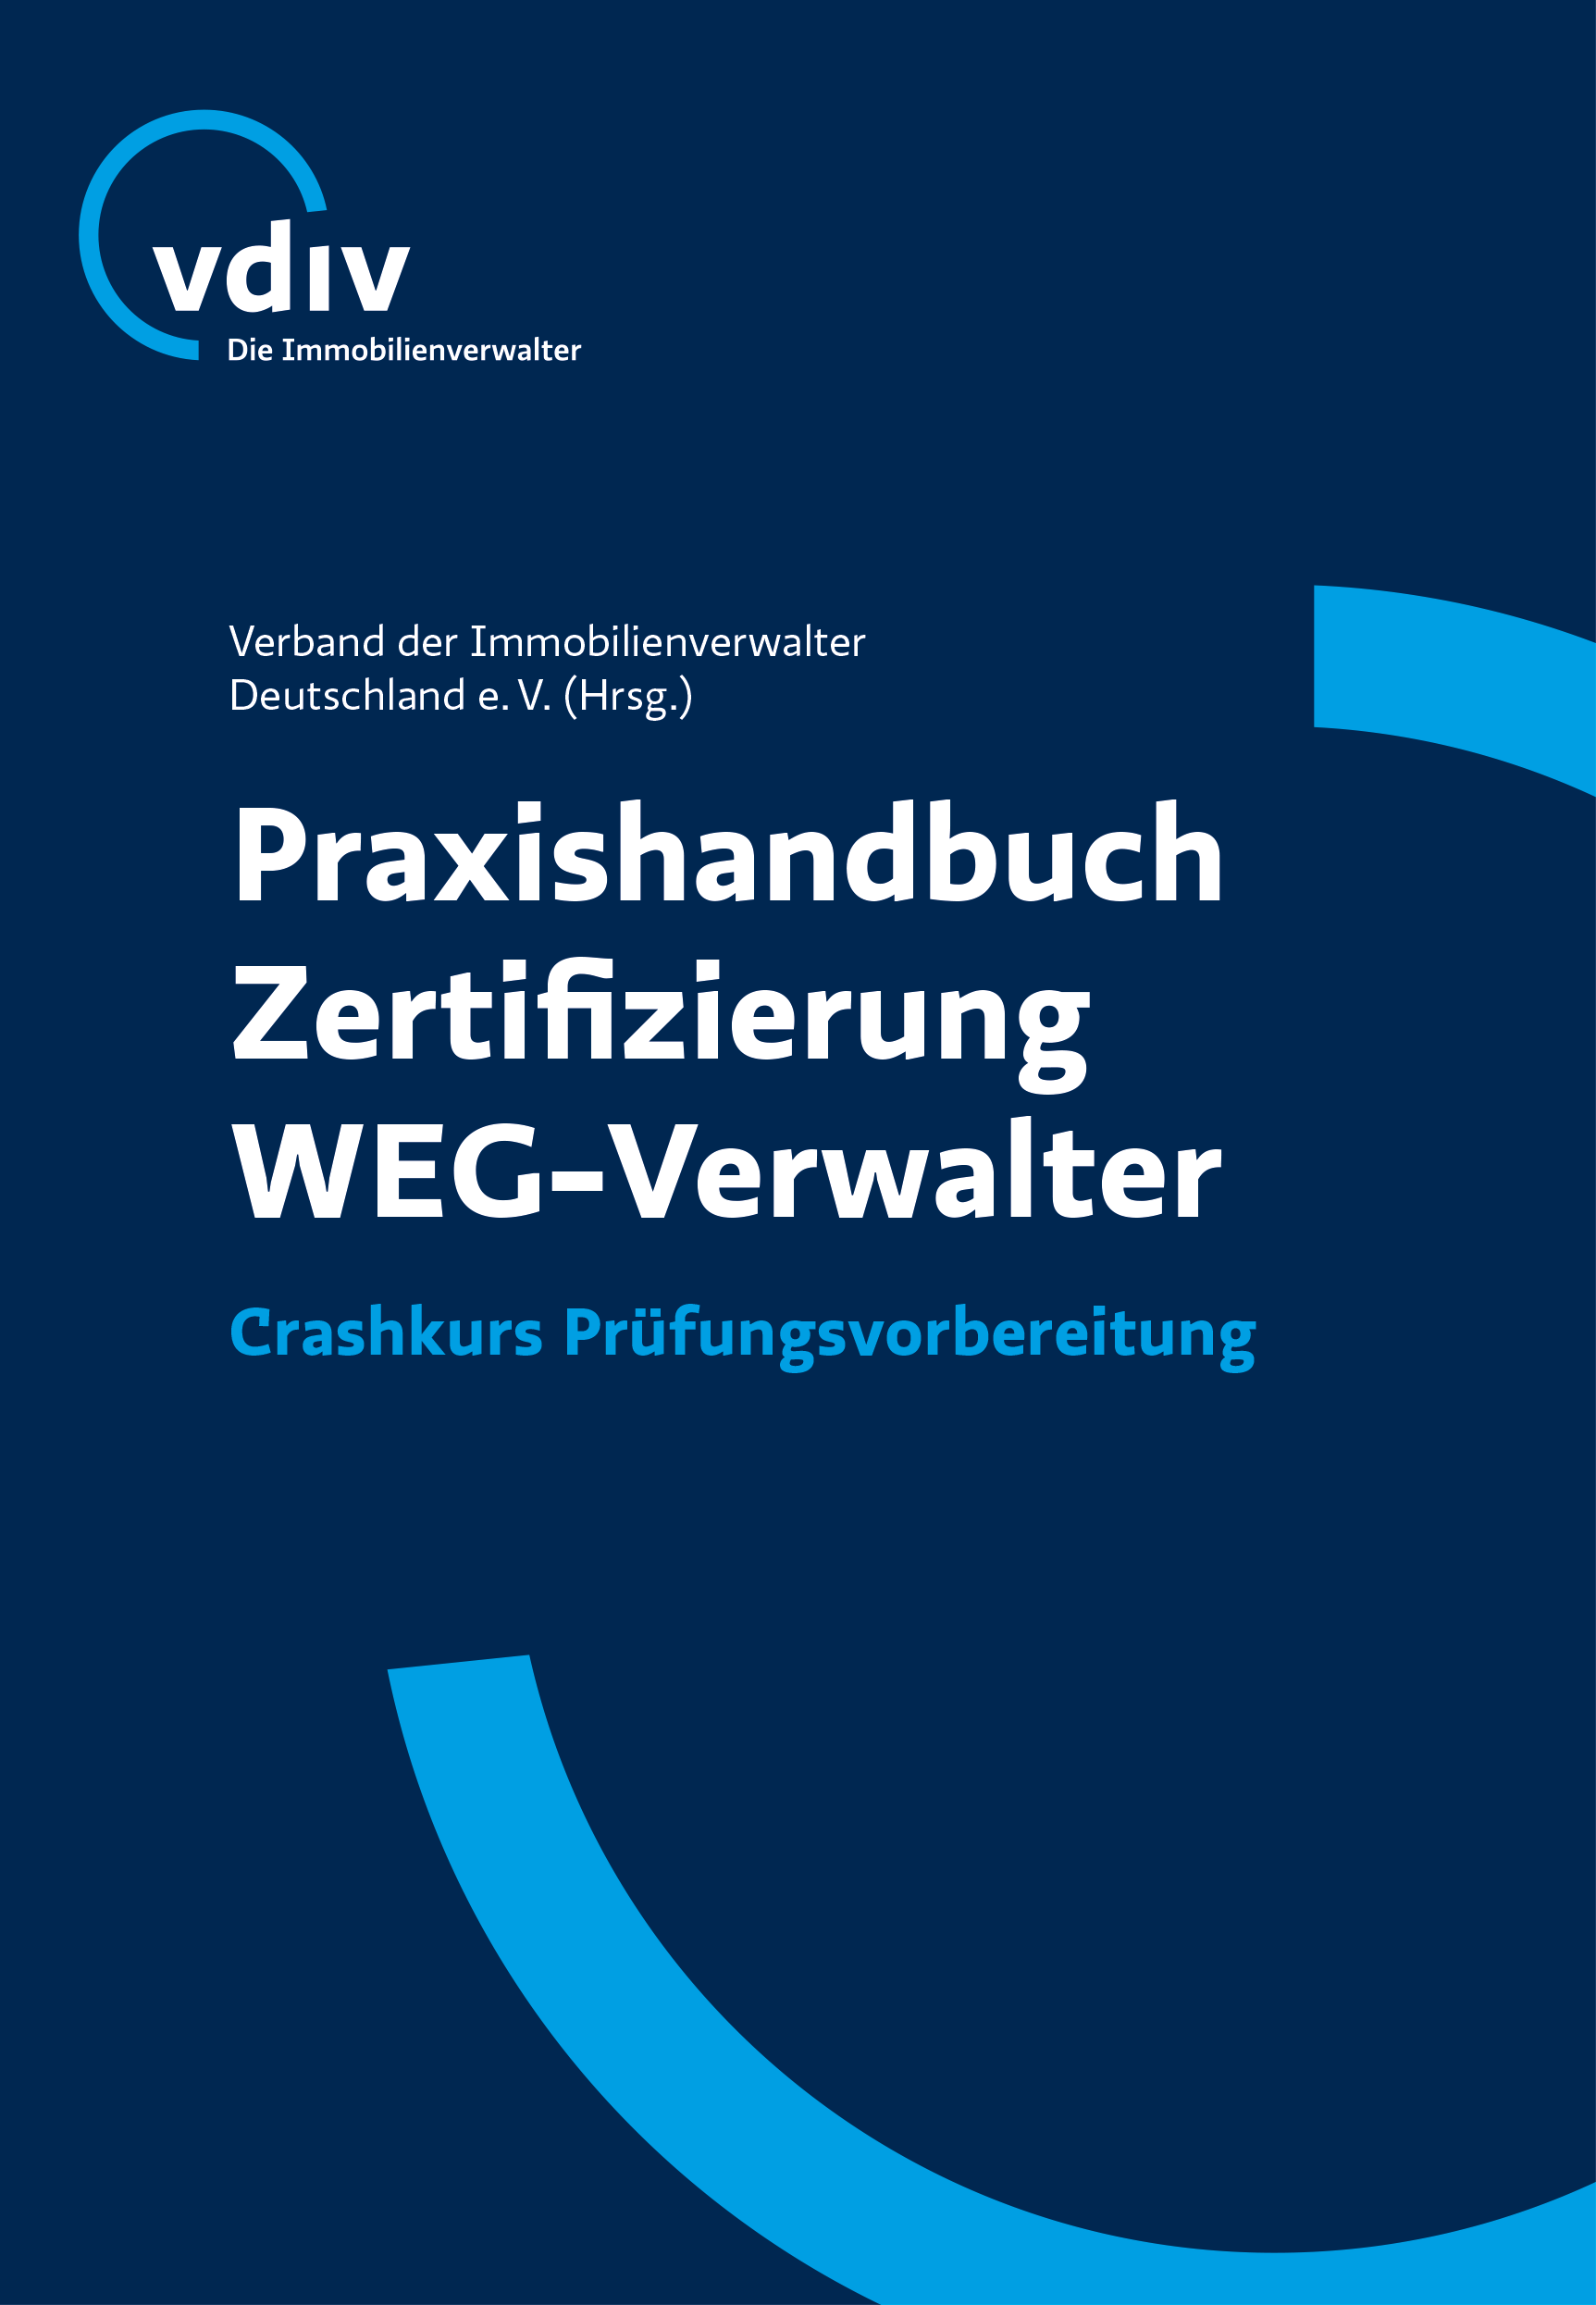 VDIV Publikation "Praxishandbuch Zertifizierung WEG-Verwalter"